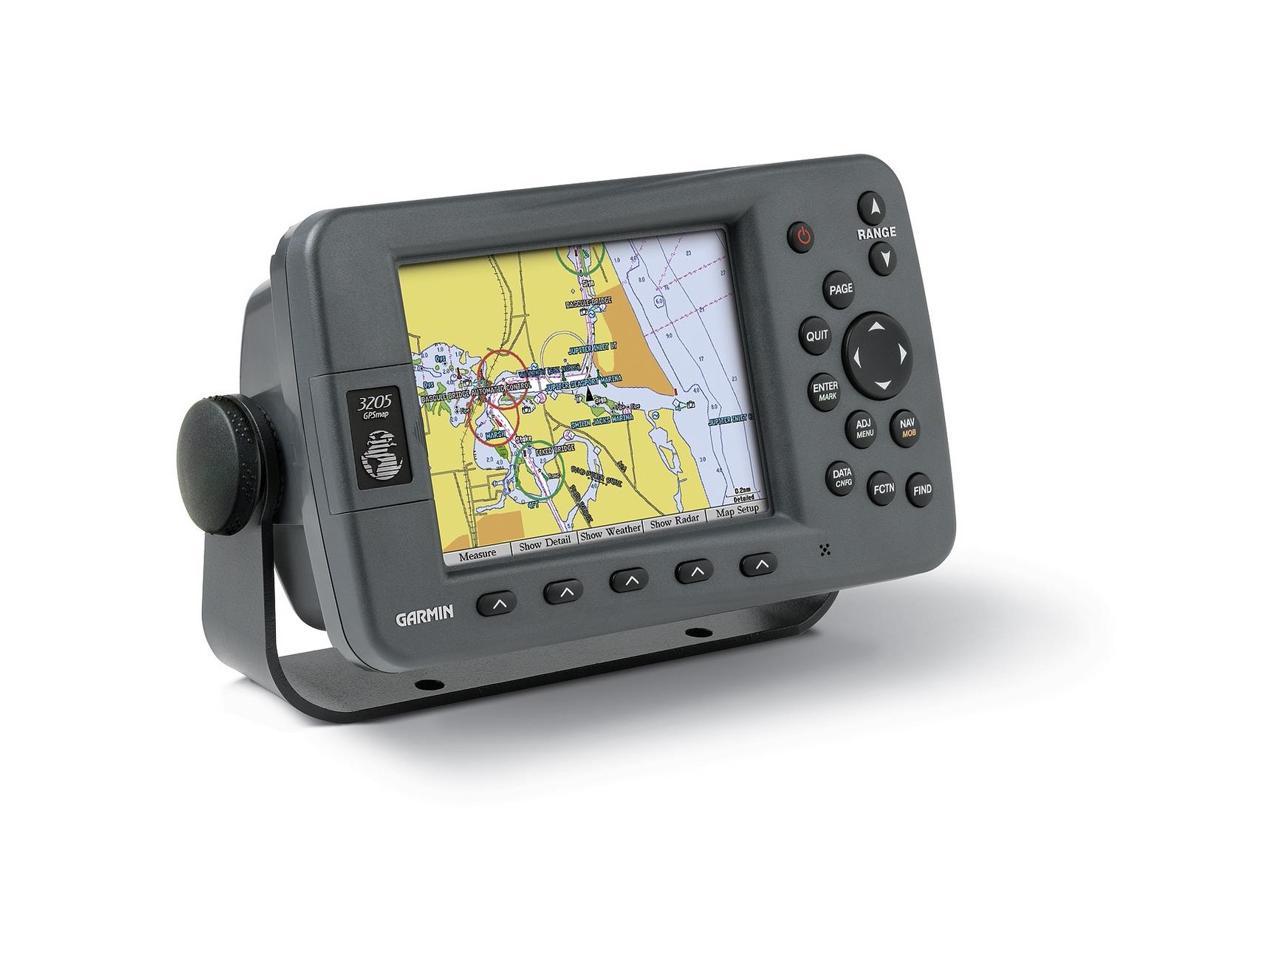 Garmin 5.0" Marine GPS Navigation - Newegg.com